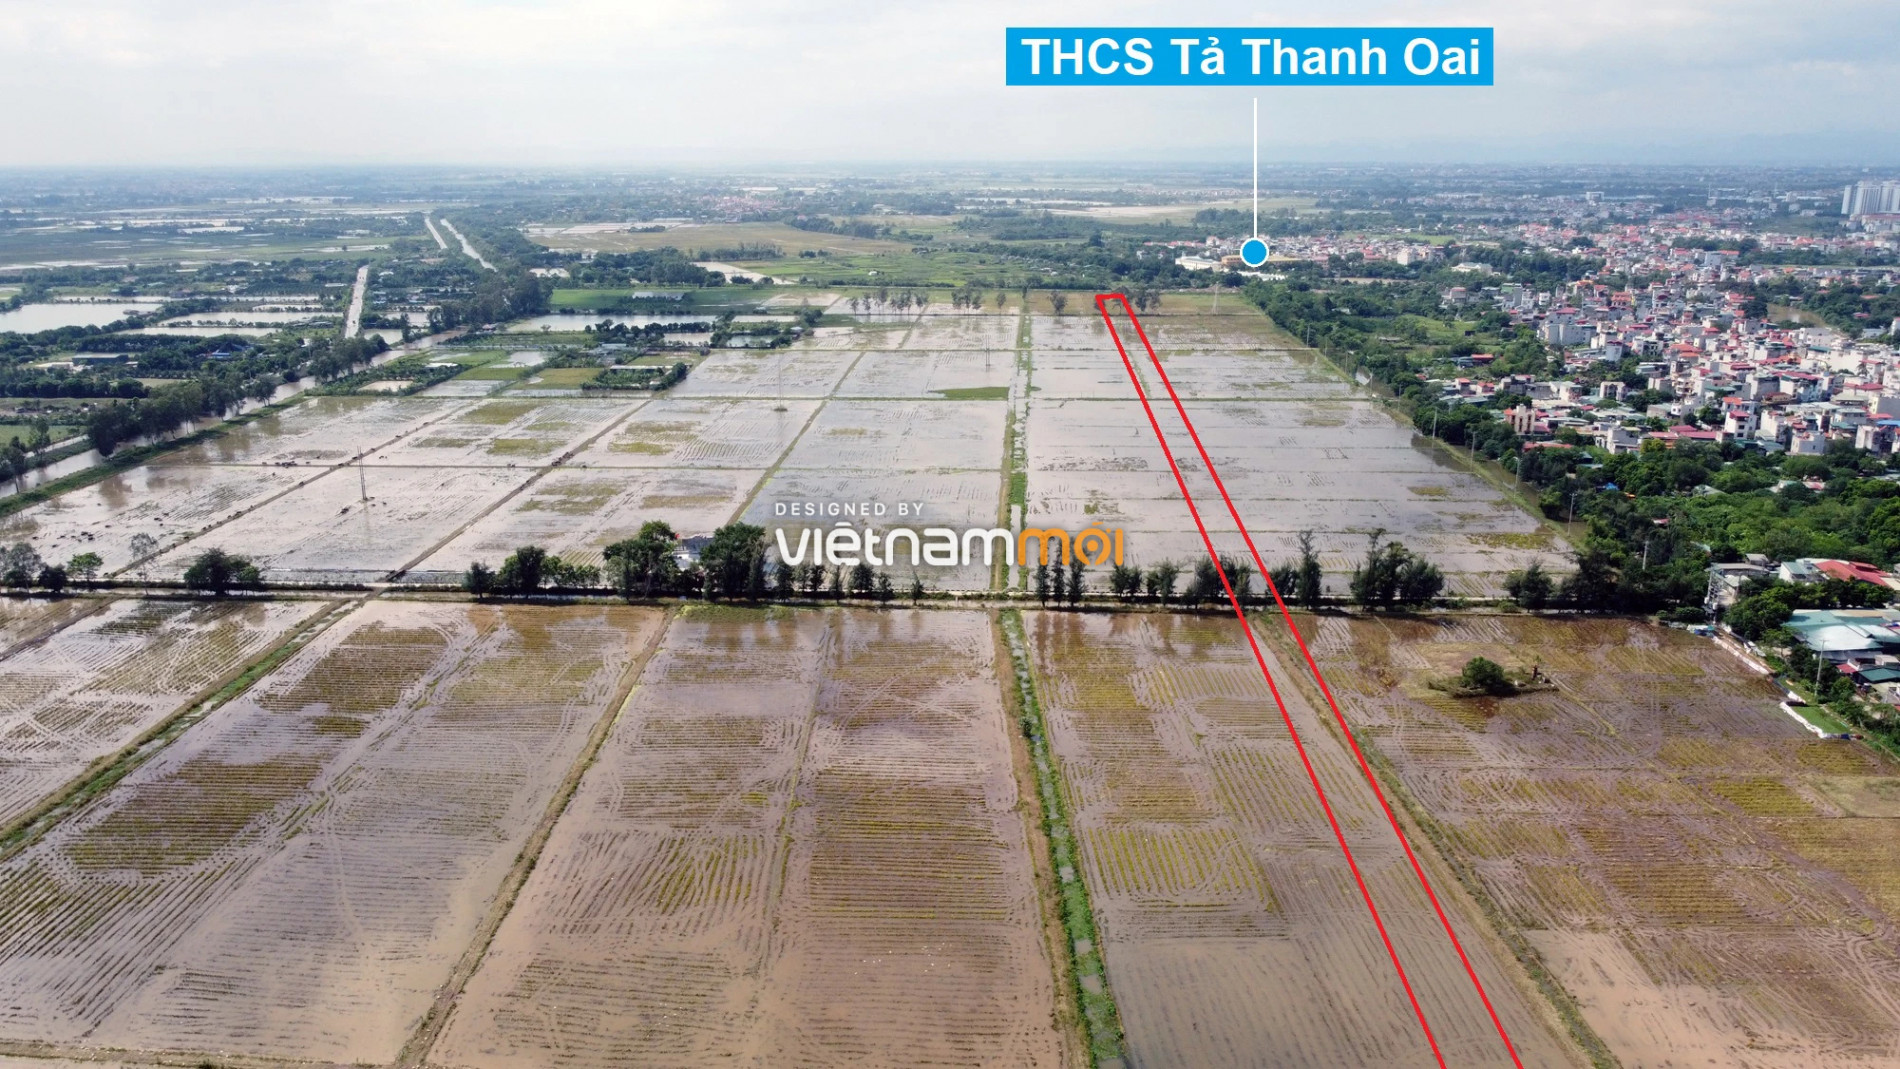 Những khu đất sắp thu hồi để mở đường ở xã Tả Thanh Oai, Thanh Trì, Hà Nội (phần 2) - Ảnh 14.